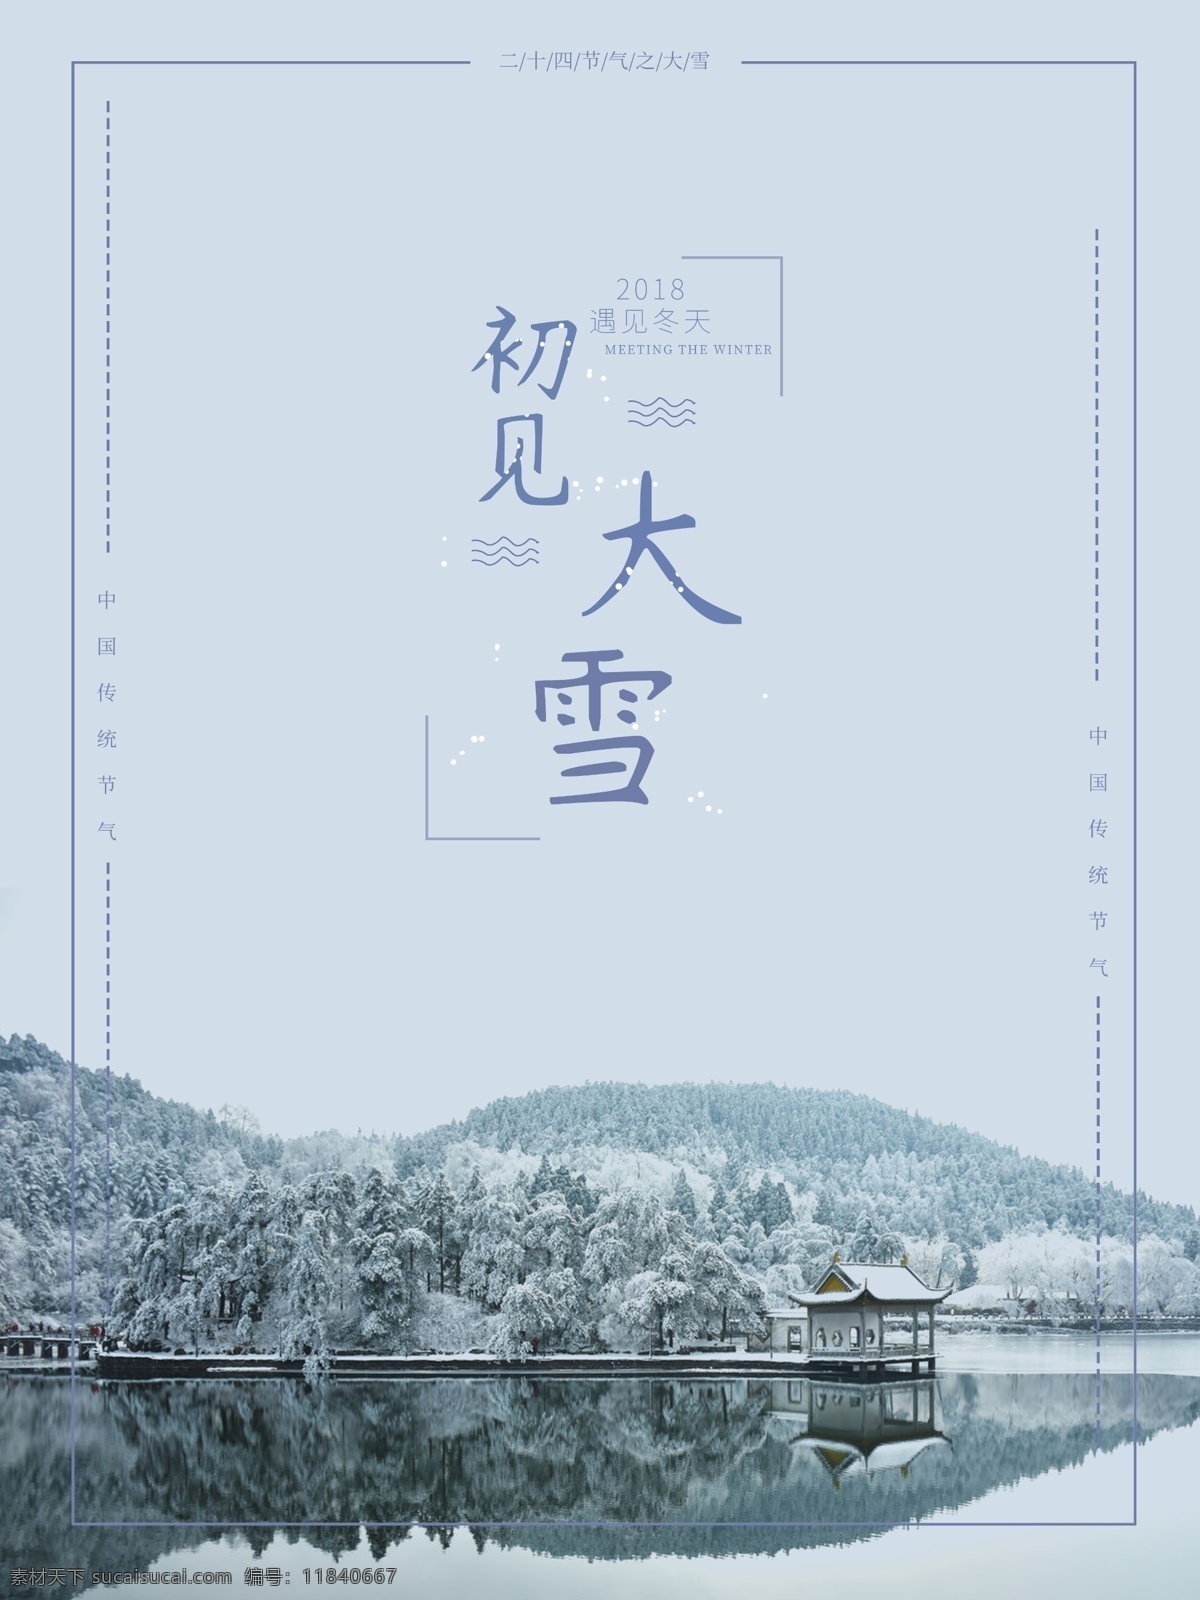 二十四节气 大雪 海报 中华传统节气 雪景 冬天